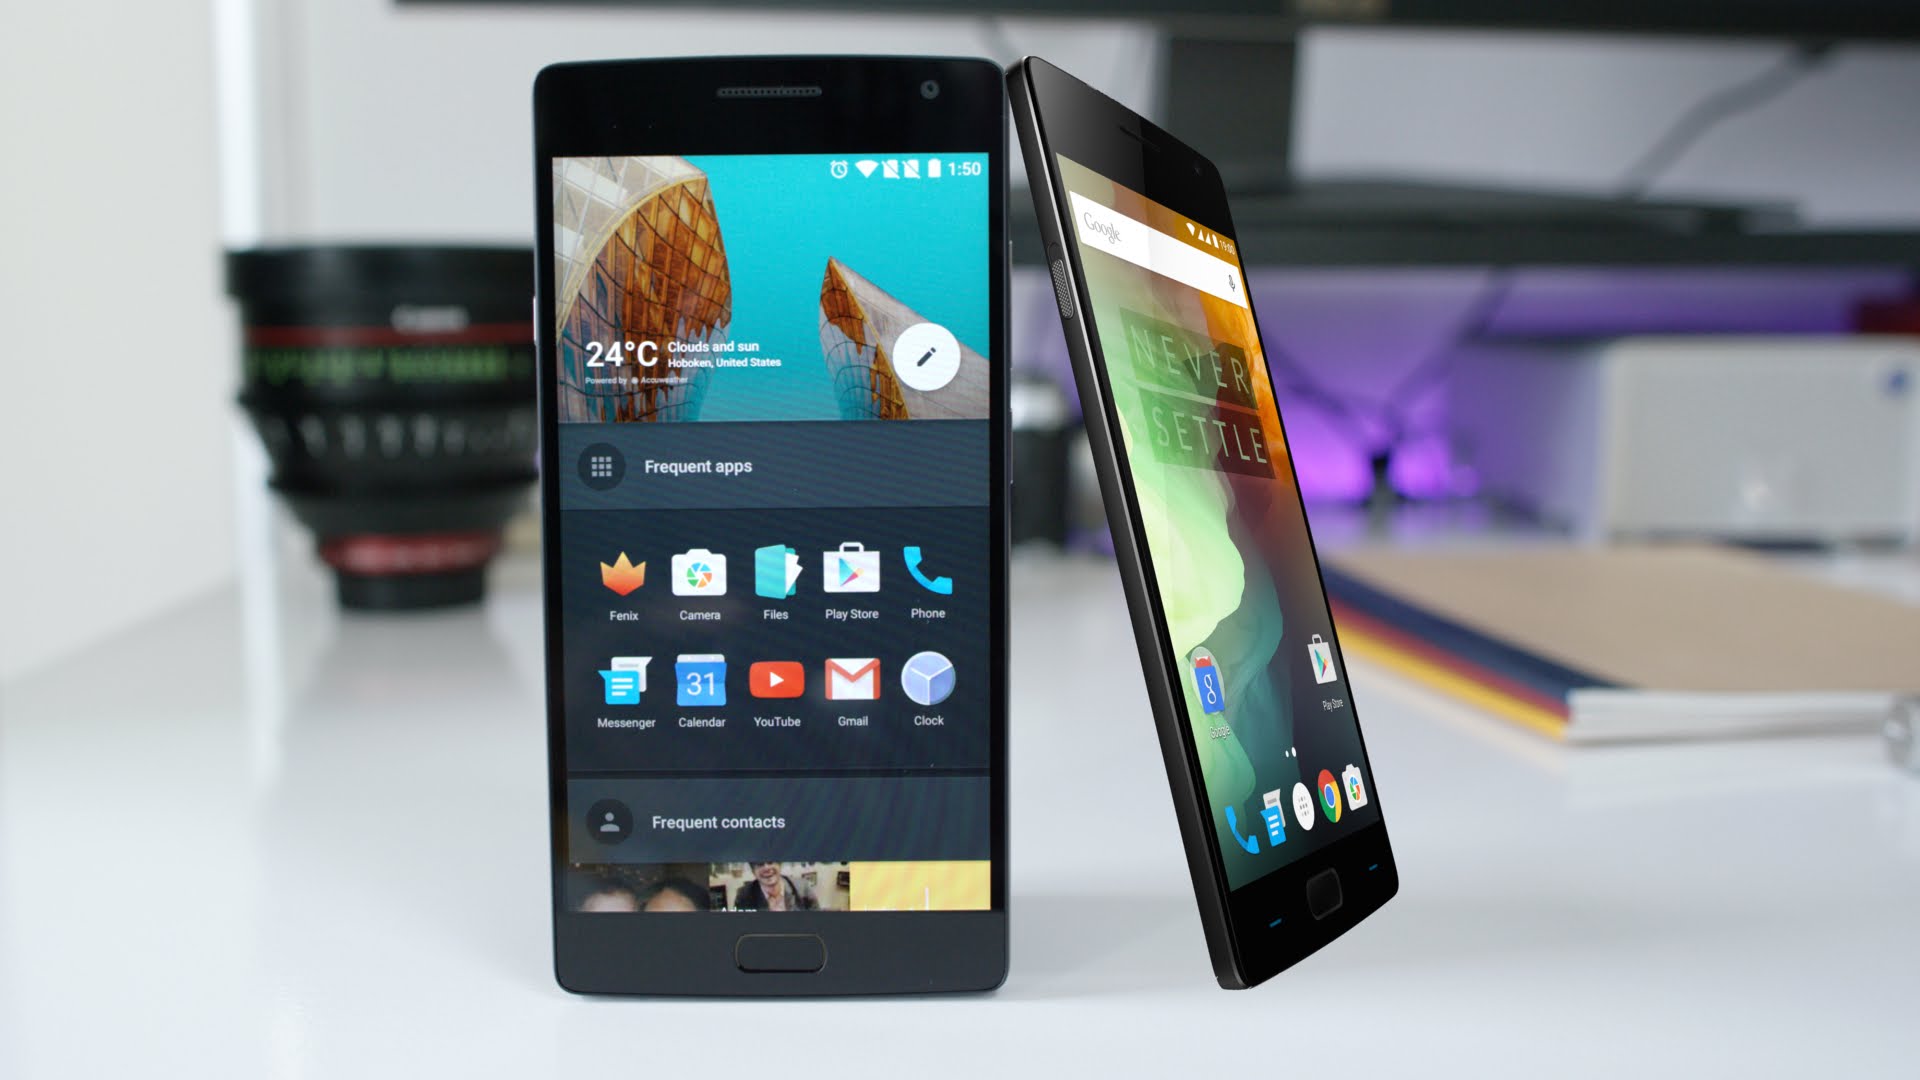 OnePlus 5 получит цифровую стабилизацию изображения при 4К-съёмке в следующем апдейте ПО»